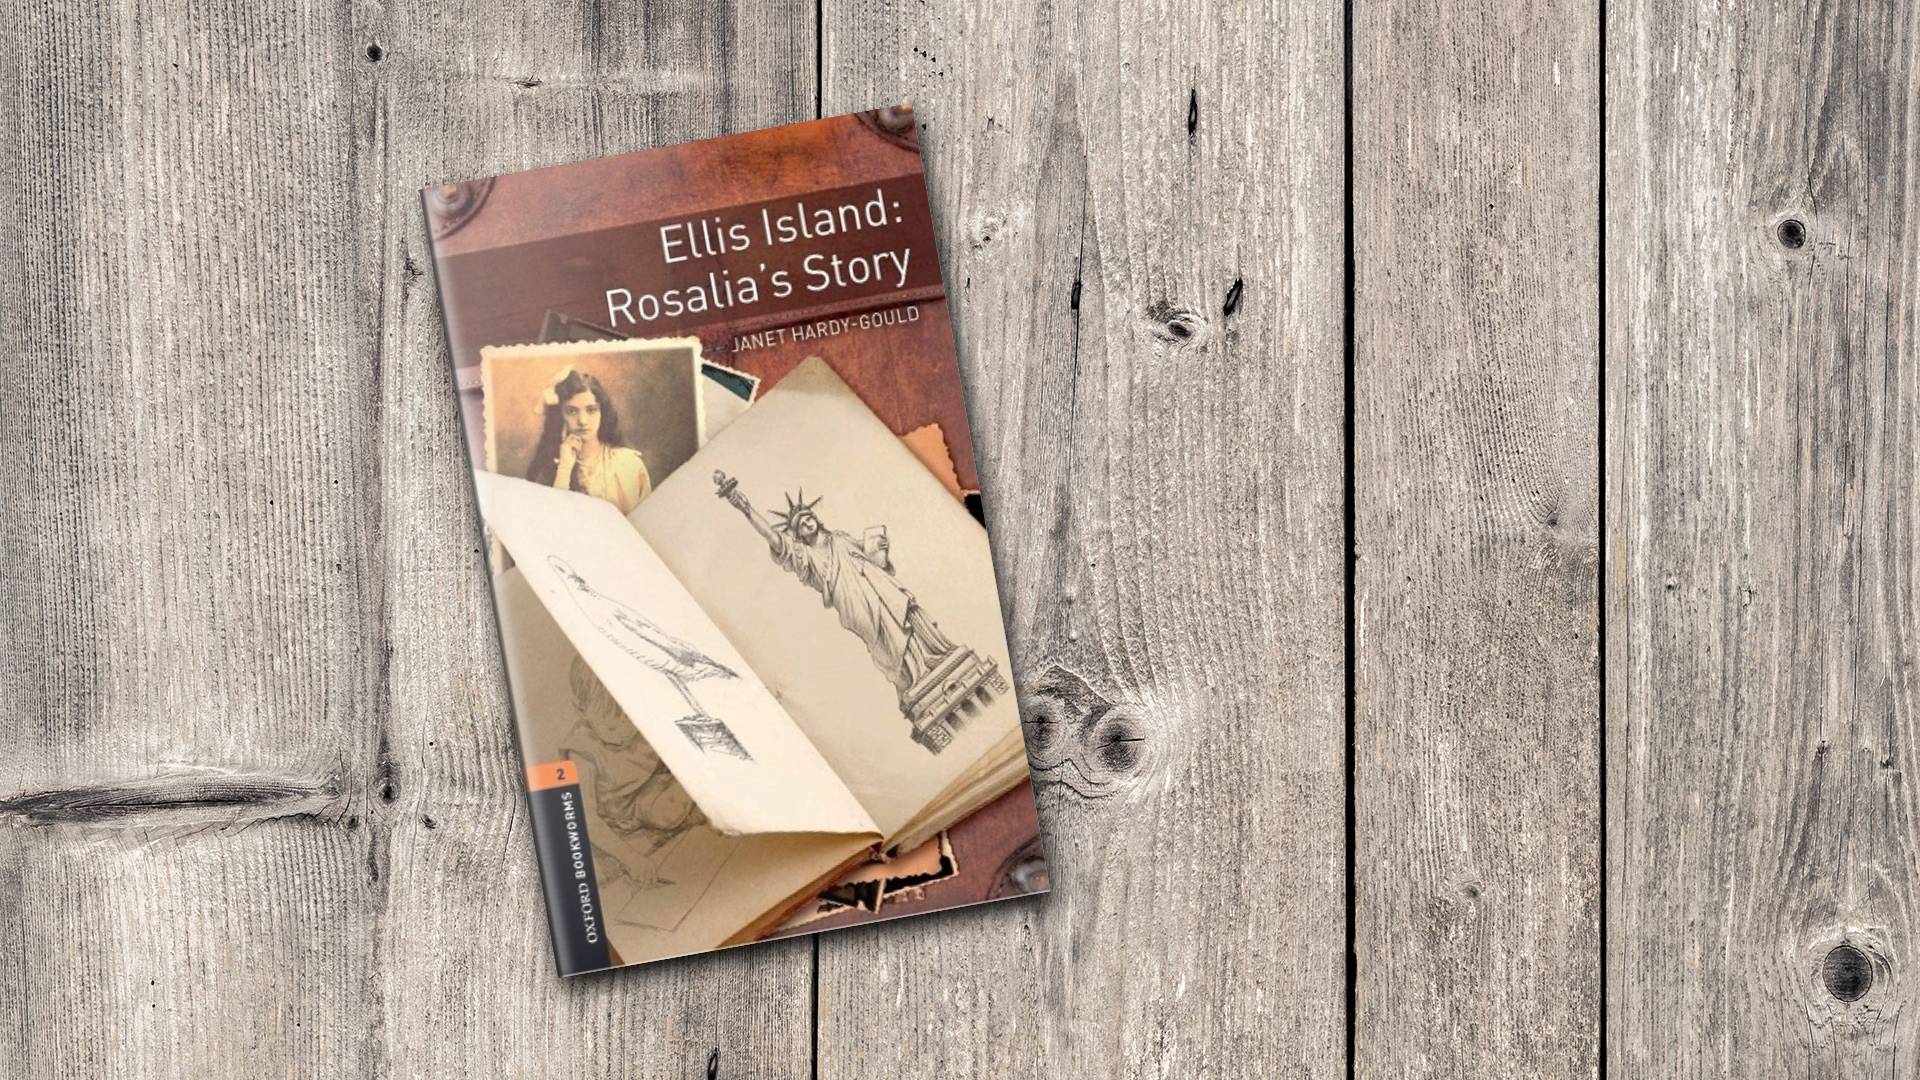 خرید کتاب داستان کوتاه انگلیسی | فروشگاه اینترنتی کتاب زبان | Oxford Bookworms 2 ellis island rosalia's story | آکسفورد بوک ورمز دو جزیره الیس داستان رزالیا